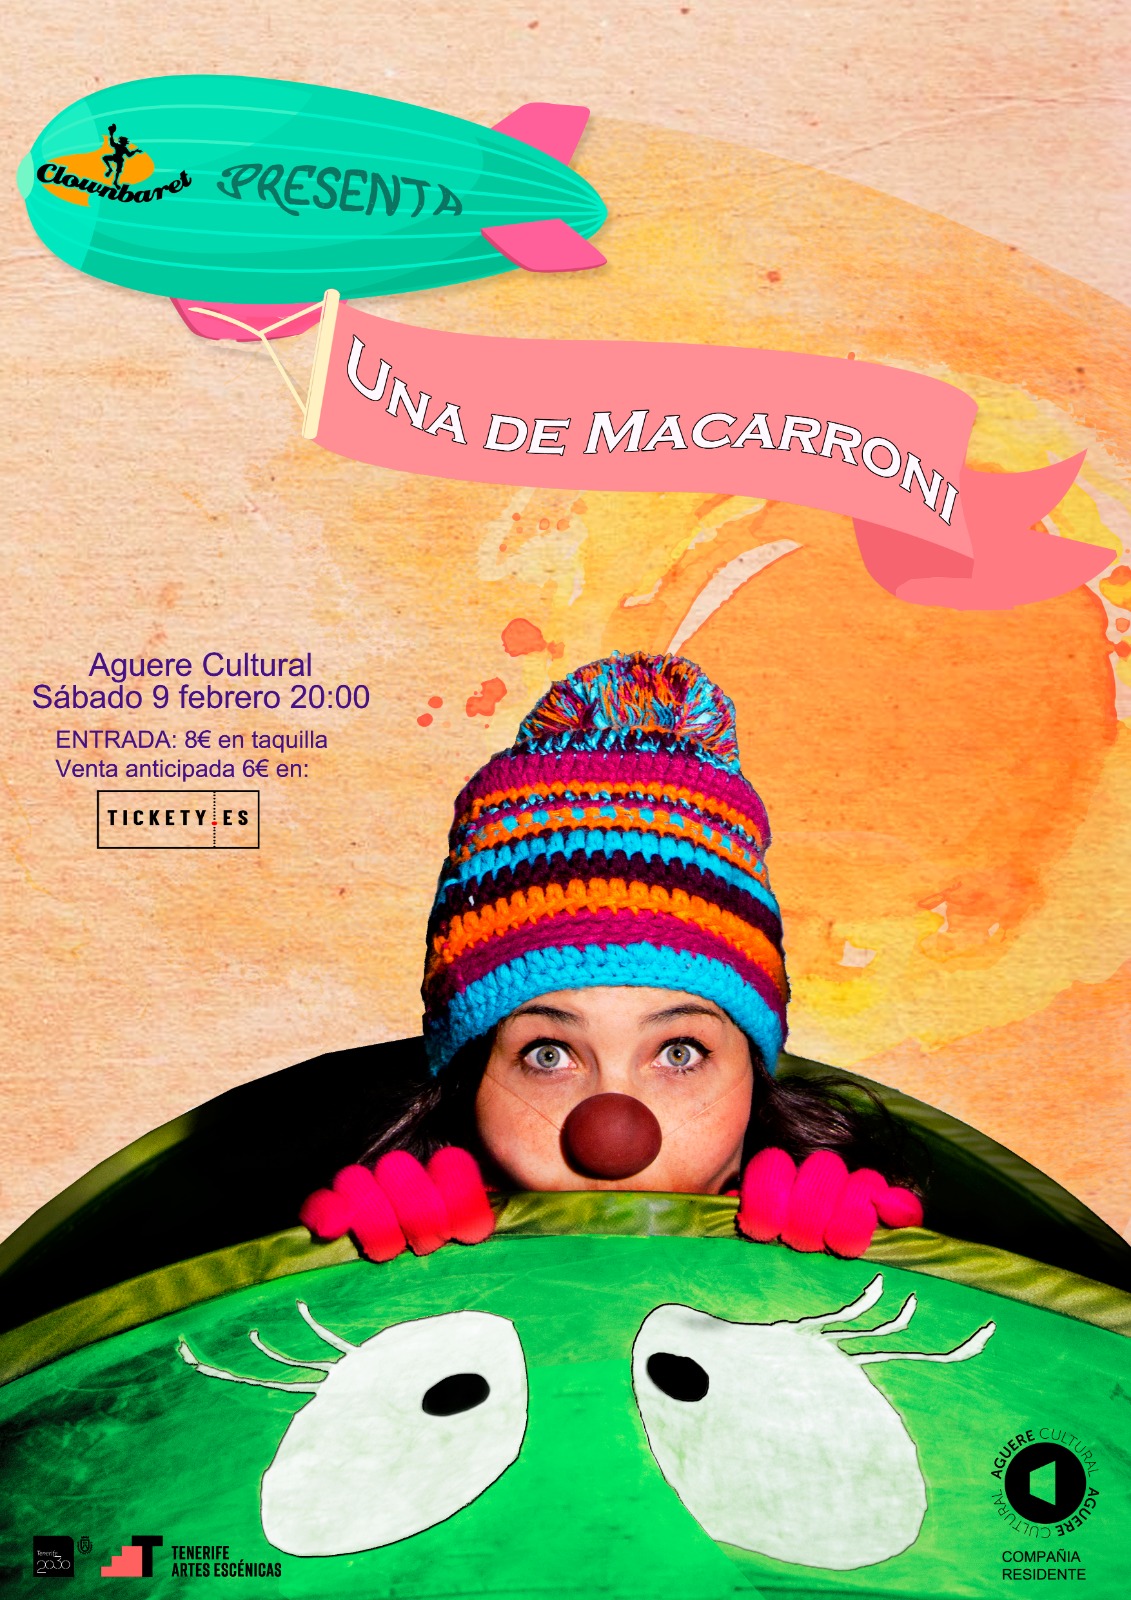 Clownbaret estrena ‘Una de Macarroni’ en el Aguere Cultural